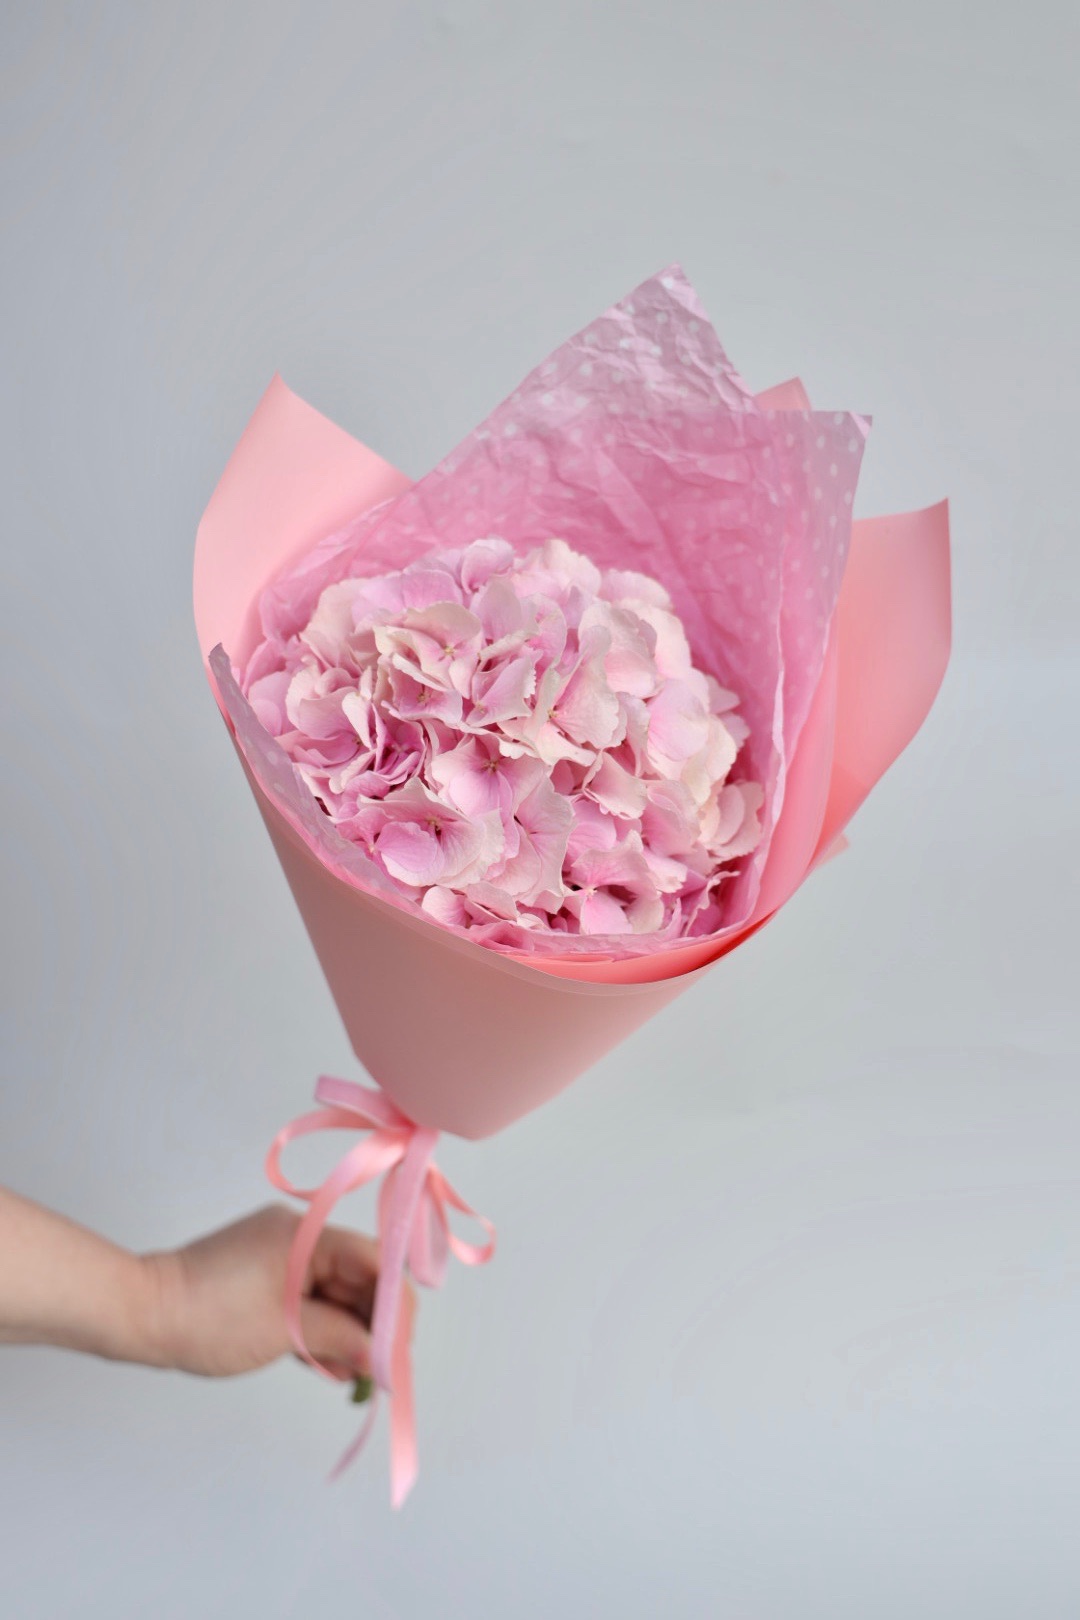 Купить букет / цветы Гортензия  в Москве с доставкой по отличной цене